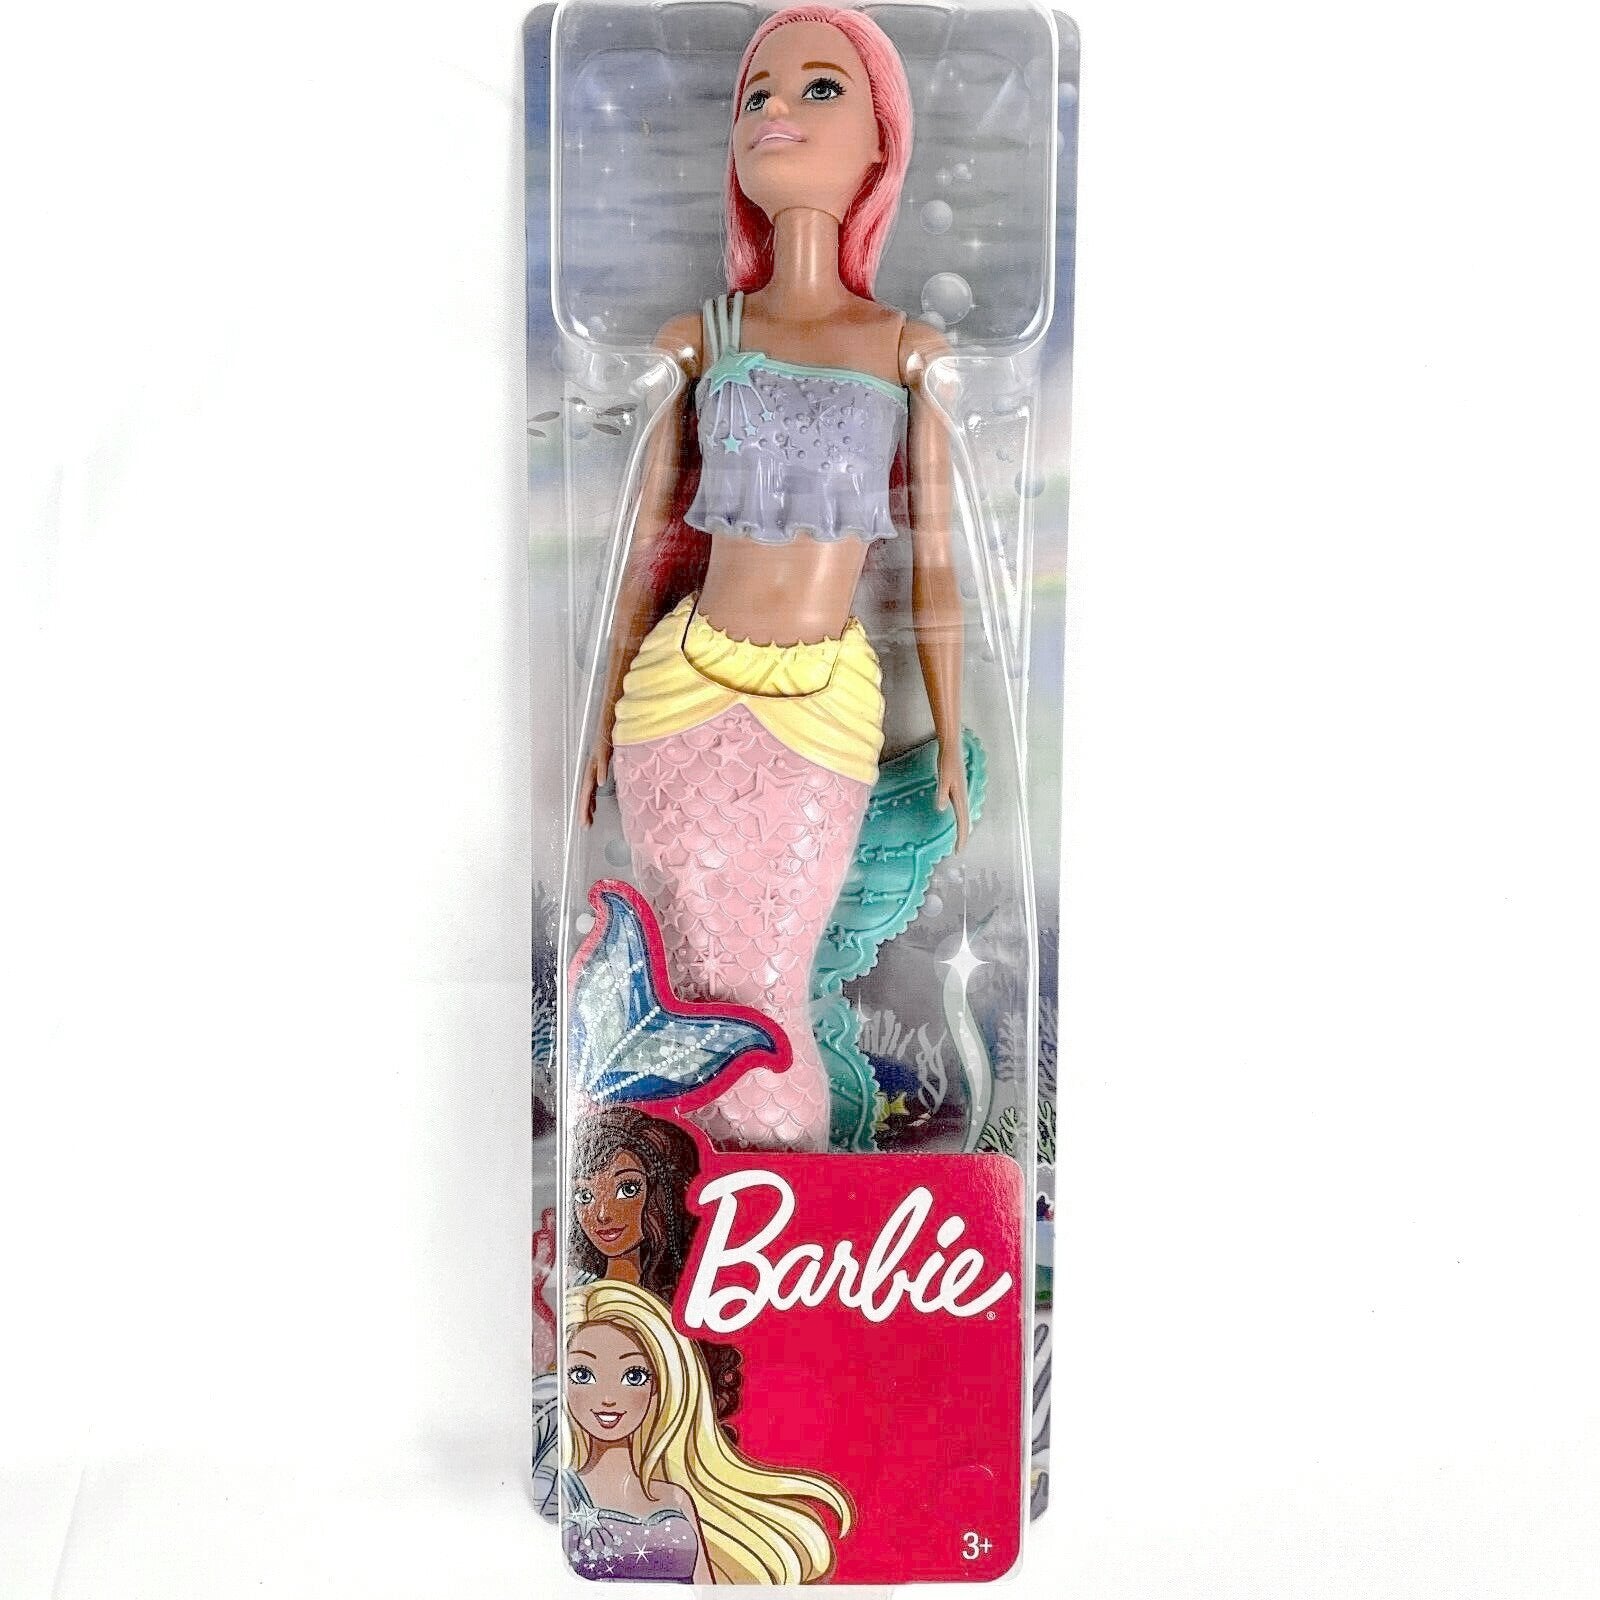 Mattel Barbie Dreamtopia Ocean Adventure Dolls and Accessories